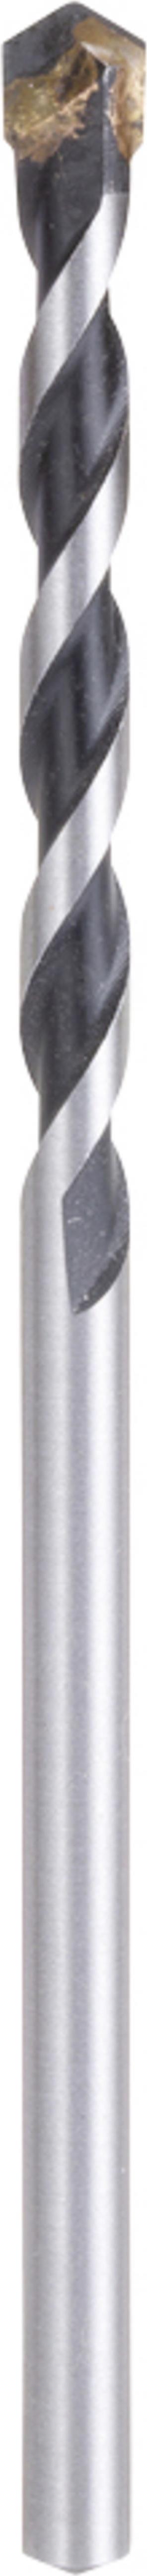 Makita E-10986 Hartmetall Mehrzweckbohrer 1 Stück 5.5 mm Gesamtlänge 100 mm Schnellspannbohrfutter 1 St. (E-10986)